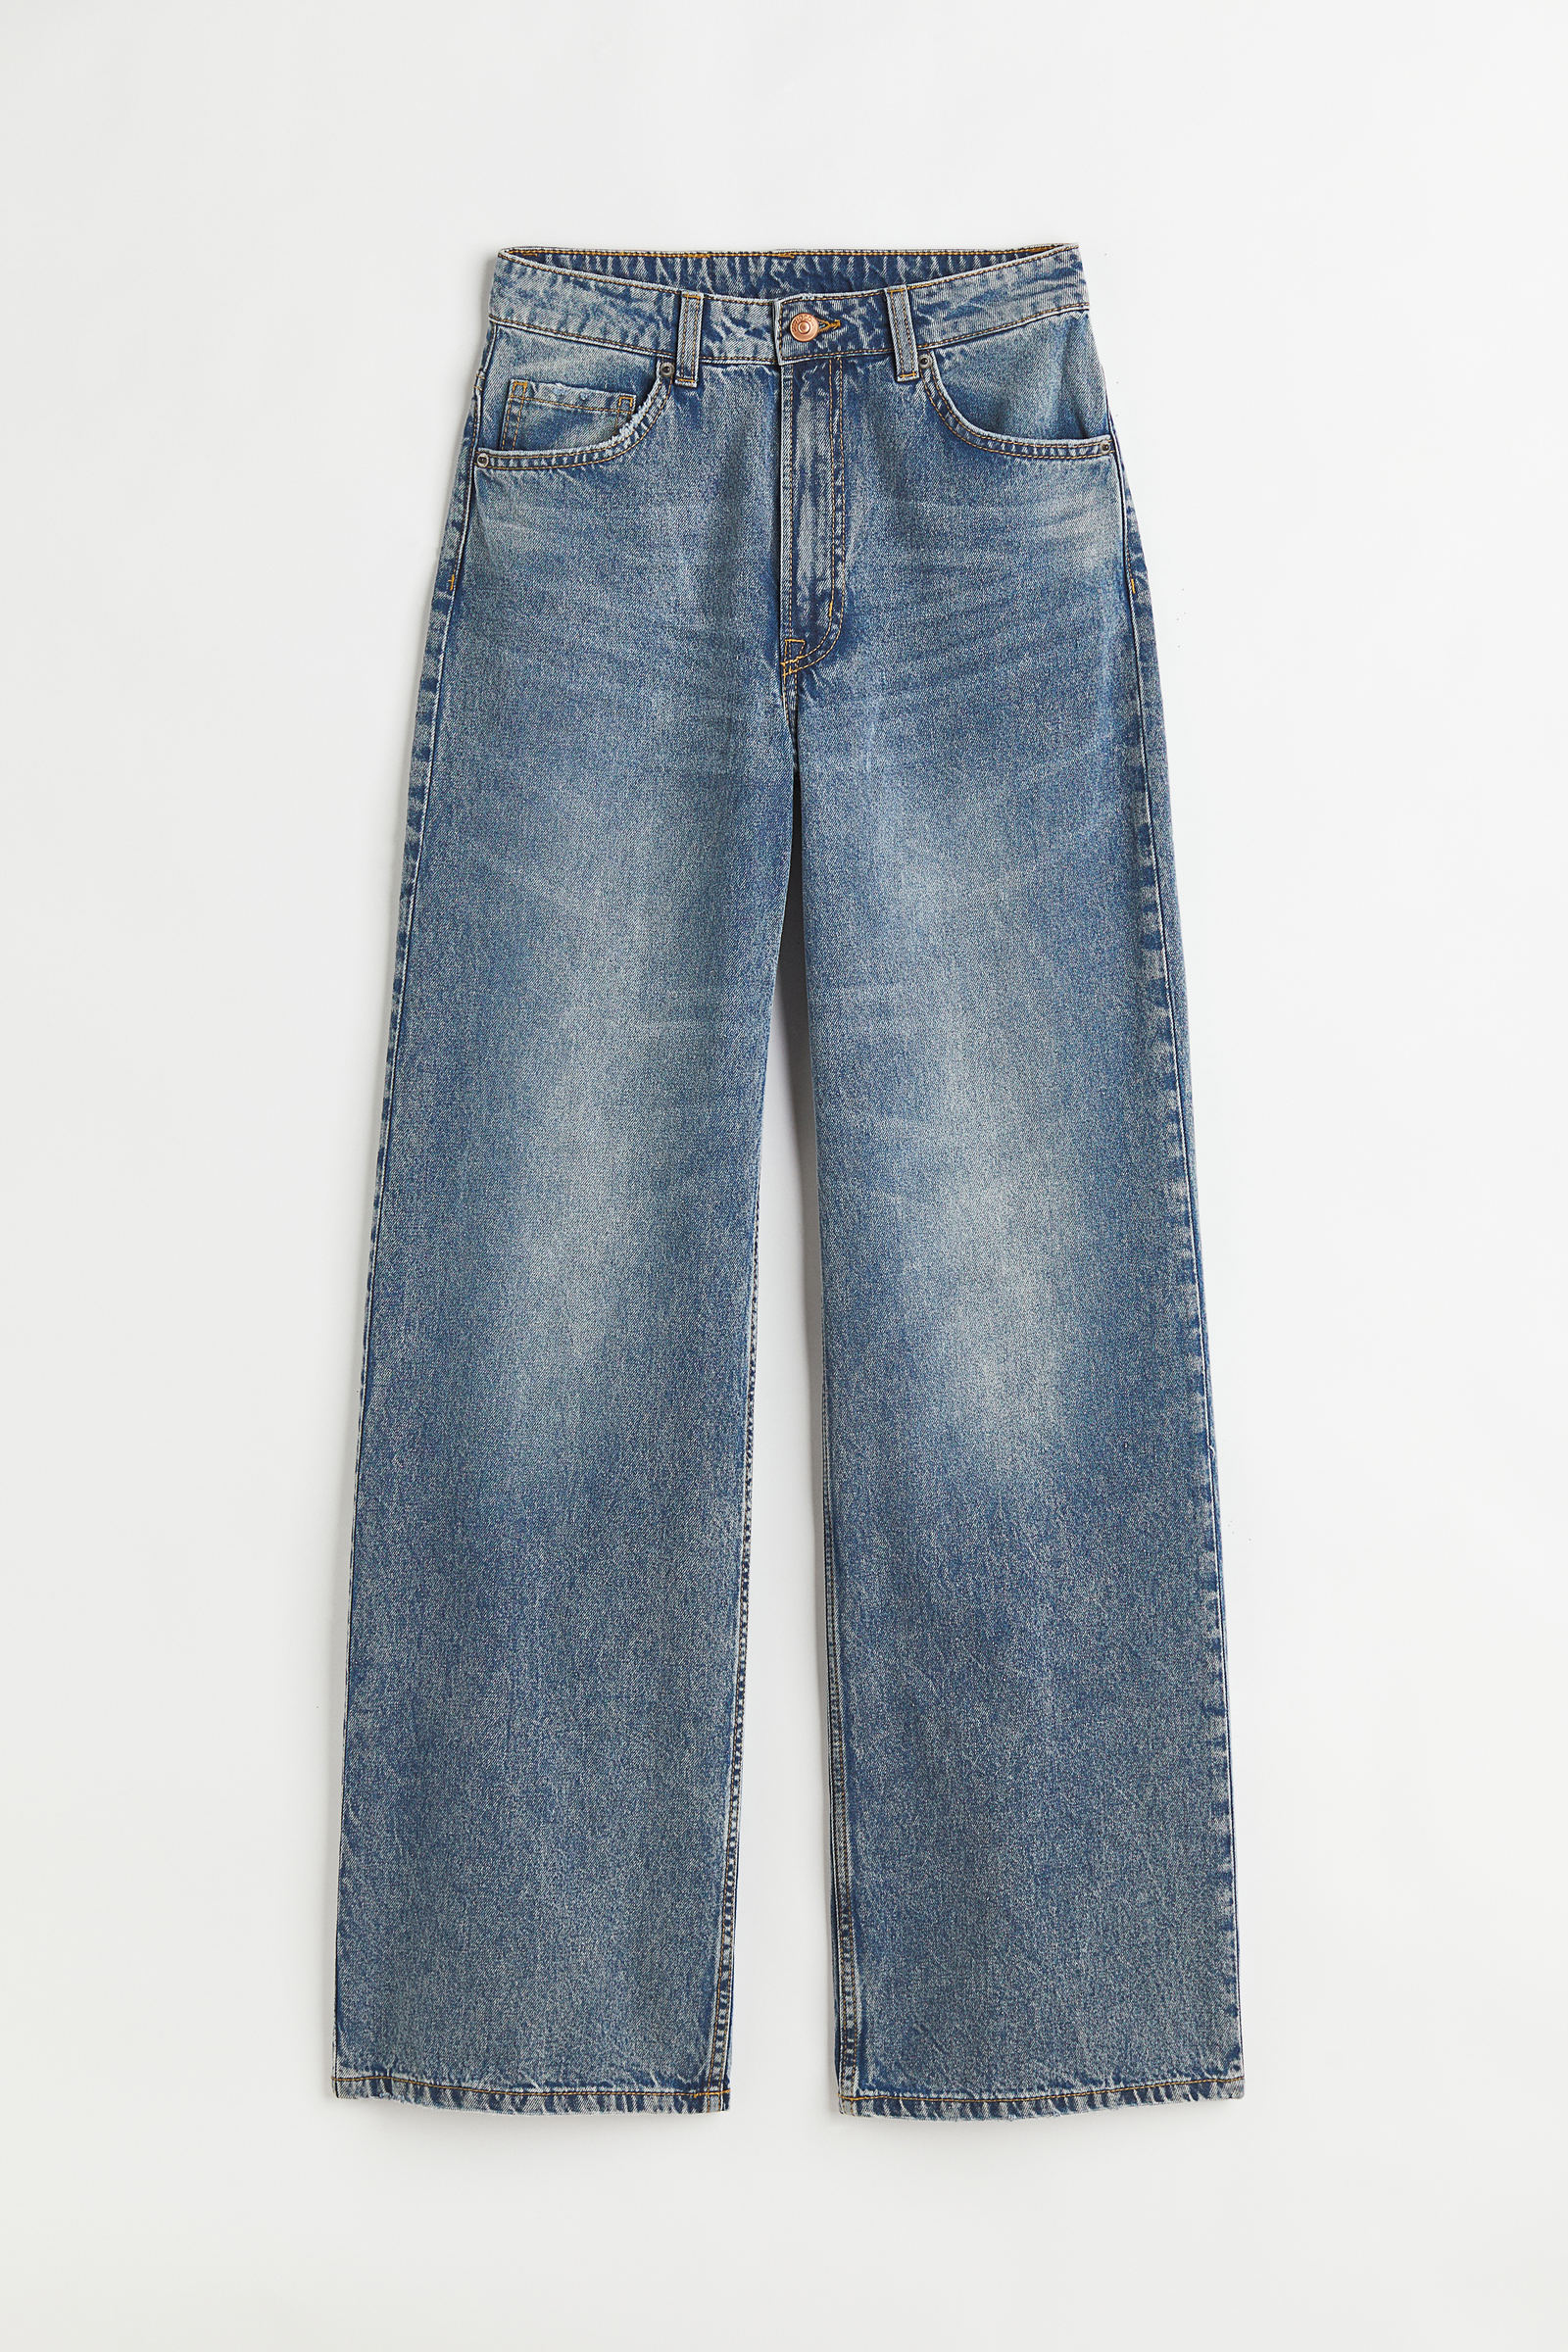 12 jeans anchos de H&M que afinan cintura: tienen tiro alto